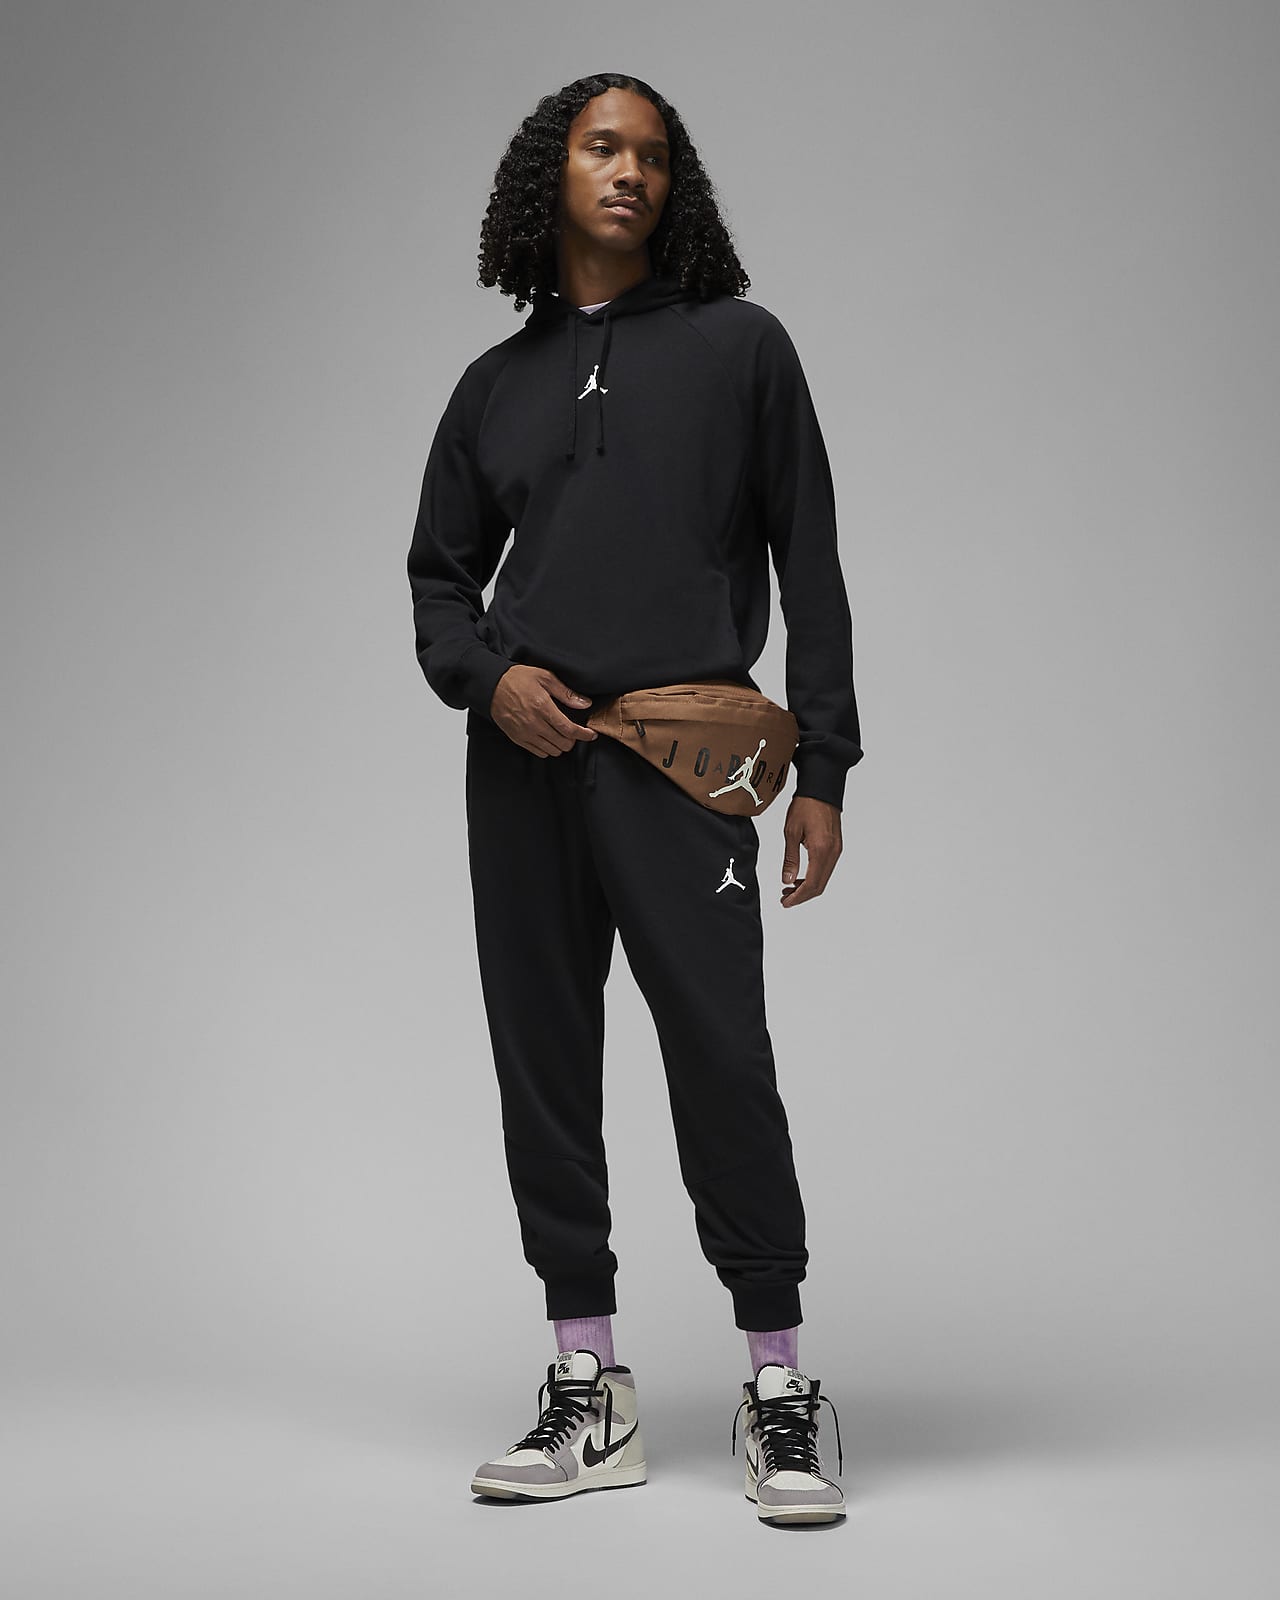 Nike Air Sudadera con capucha de tejido Fleece - Hombre